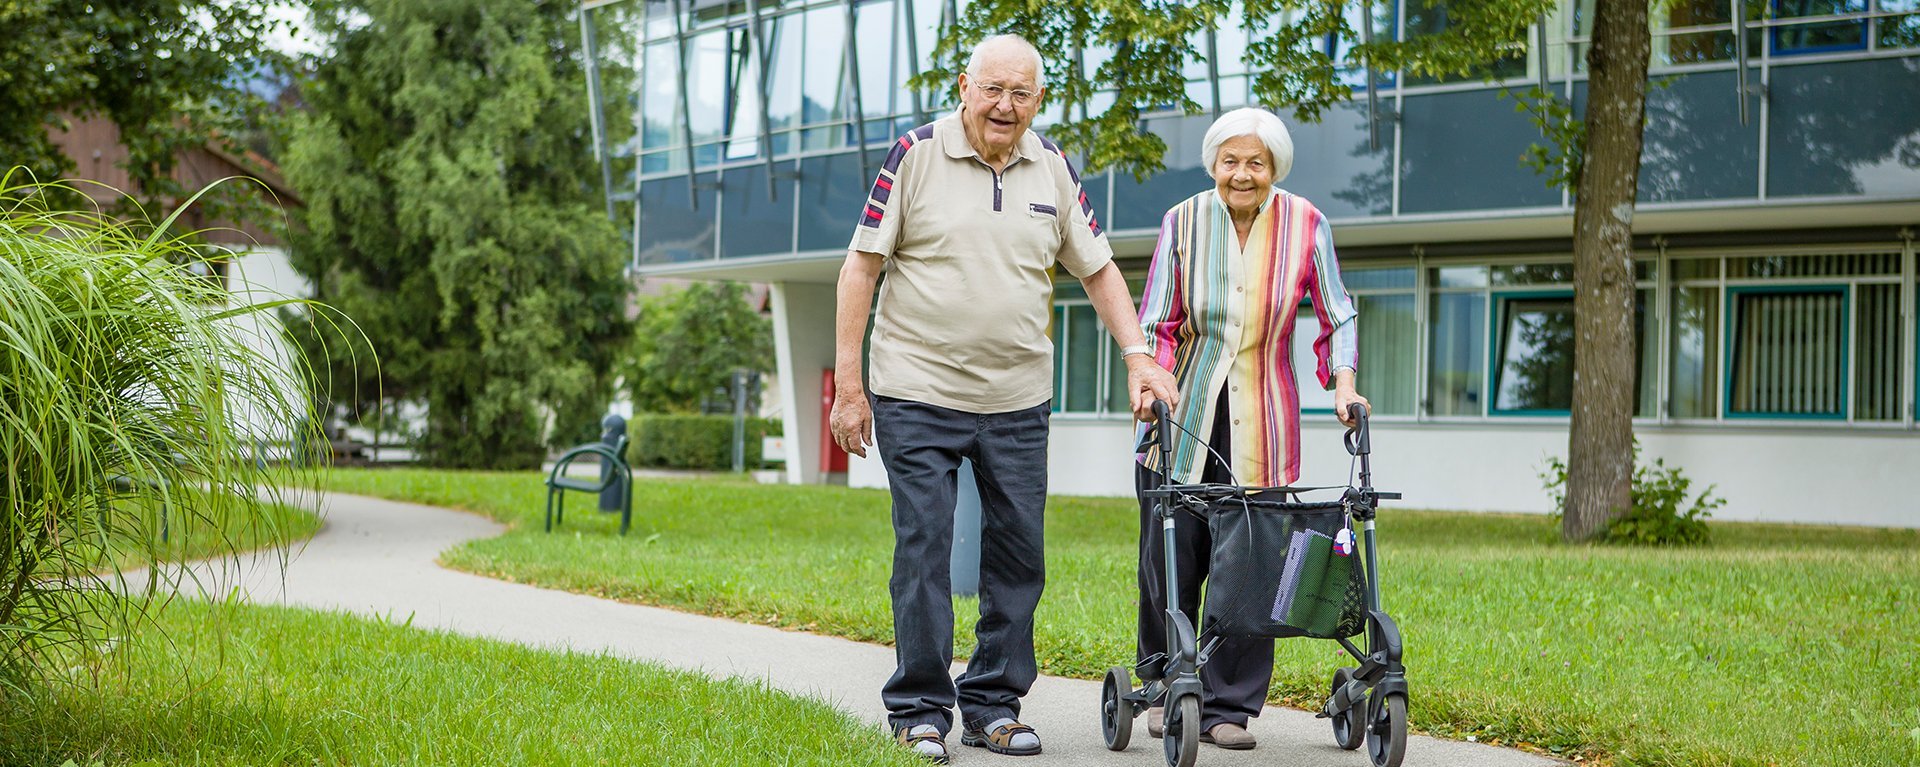 Altersmedizin im Klinikverbund Allgäu, Älteres Pärchen geht spazieren